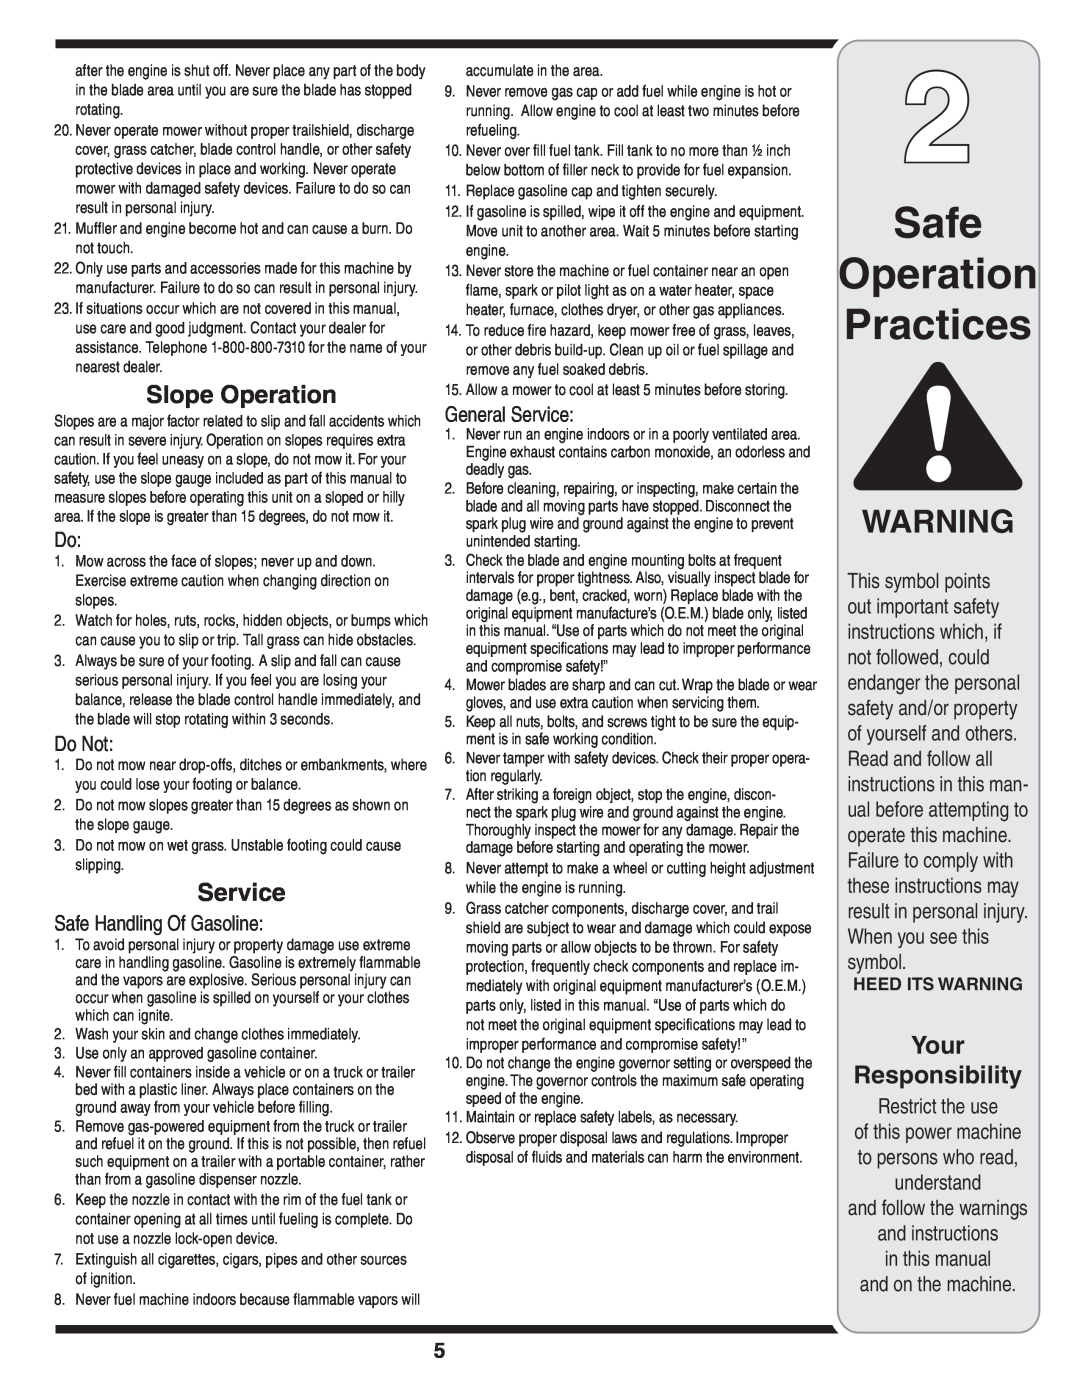 Yard-Man 263 warranty Safe Operation Practices, Slope Operation, Do Not, Safe Handling Of Gasoline, General Service 